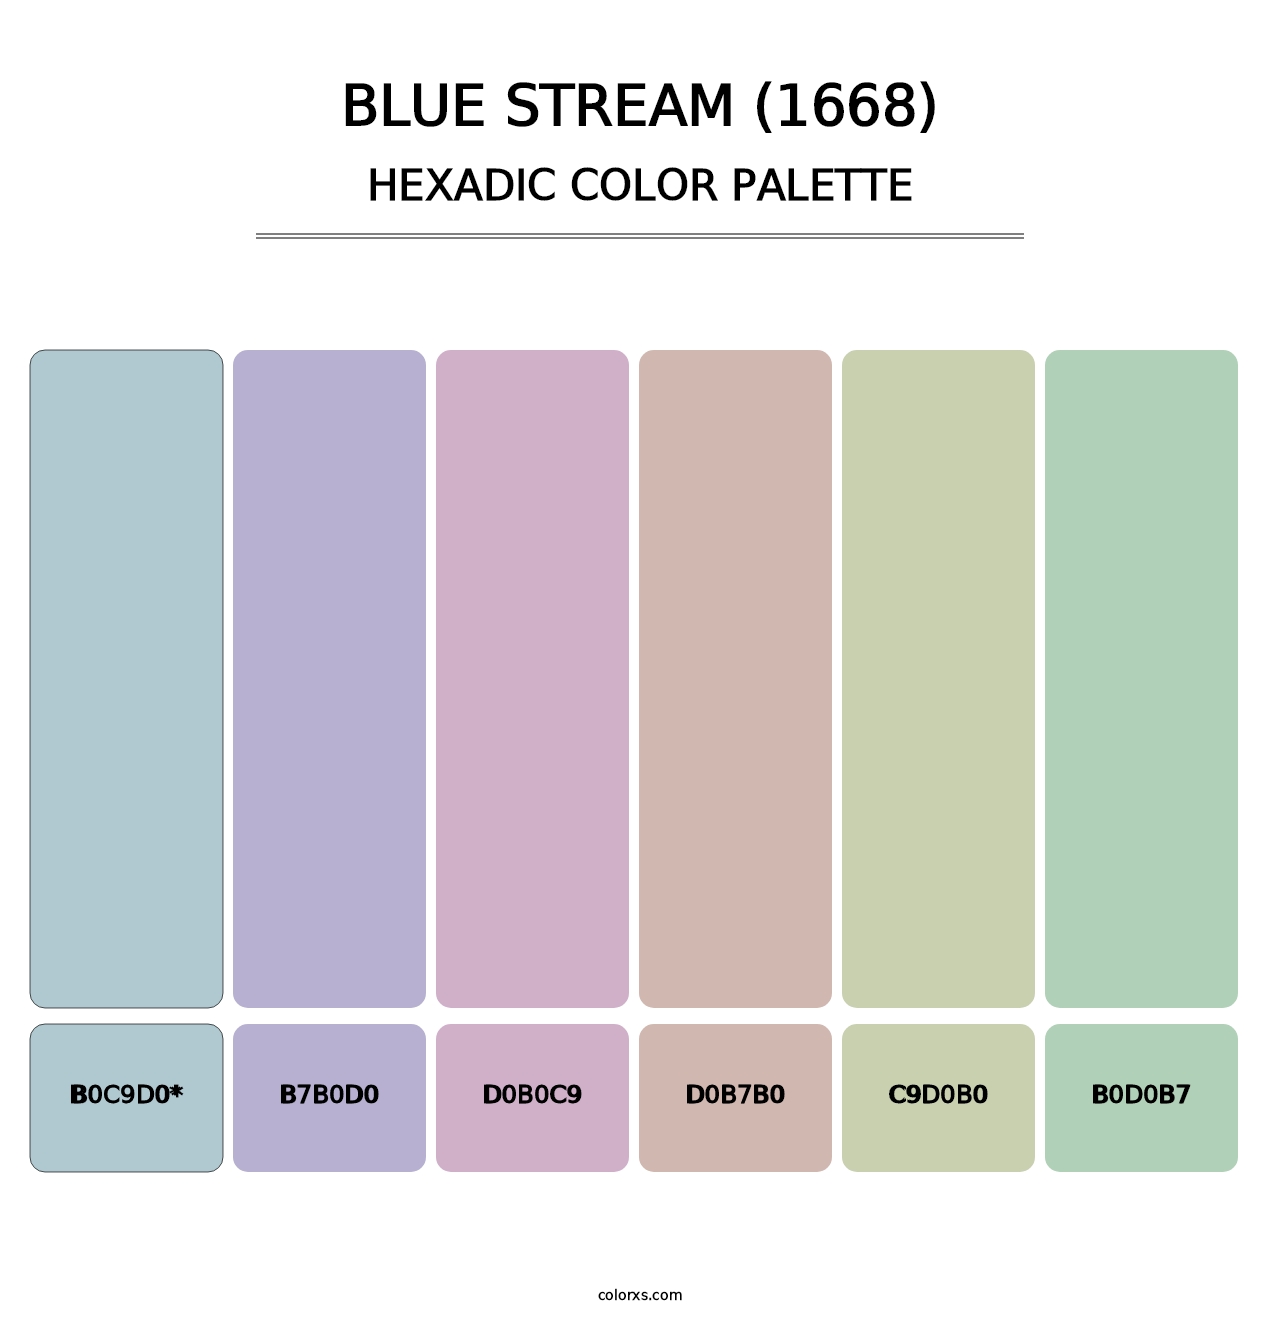 Blue Stream (1668) - Hexadic Color Palette